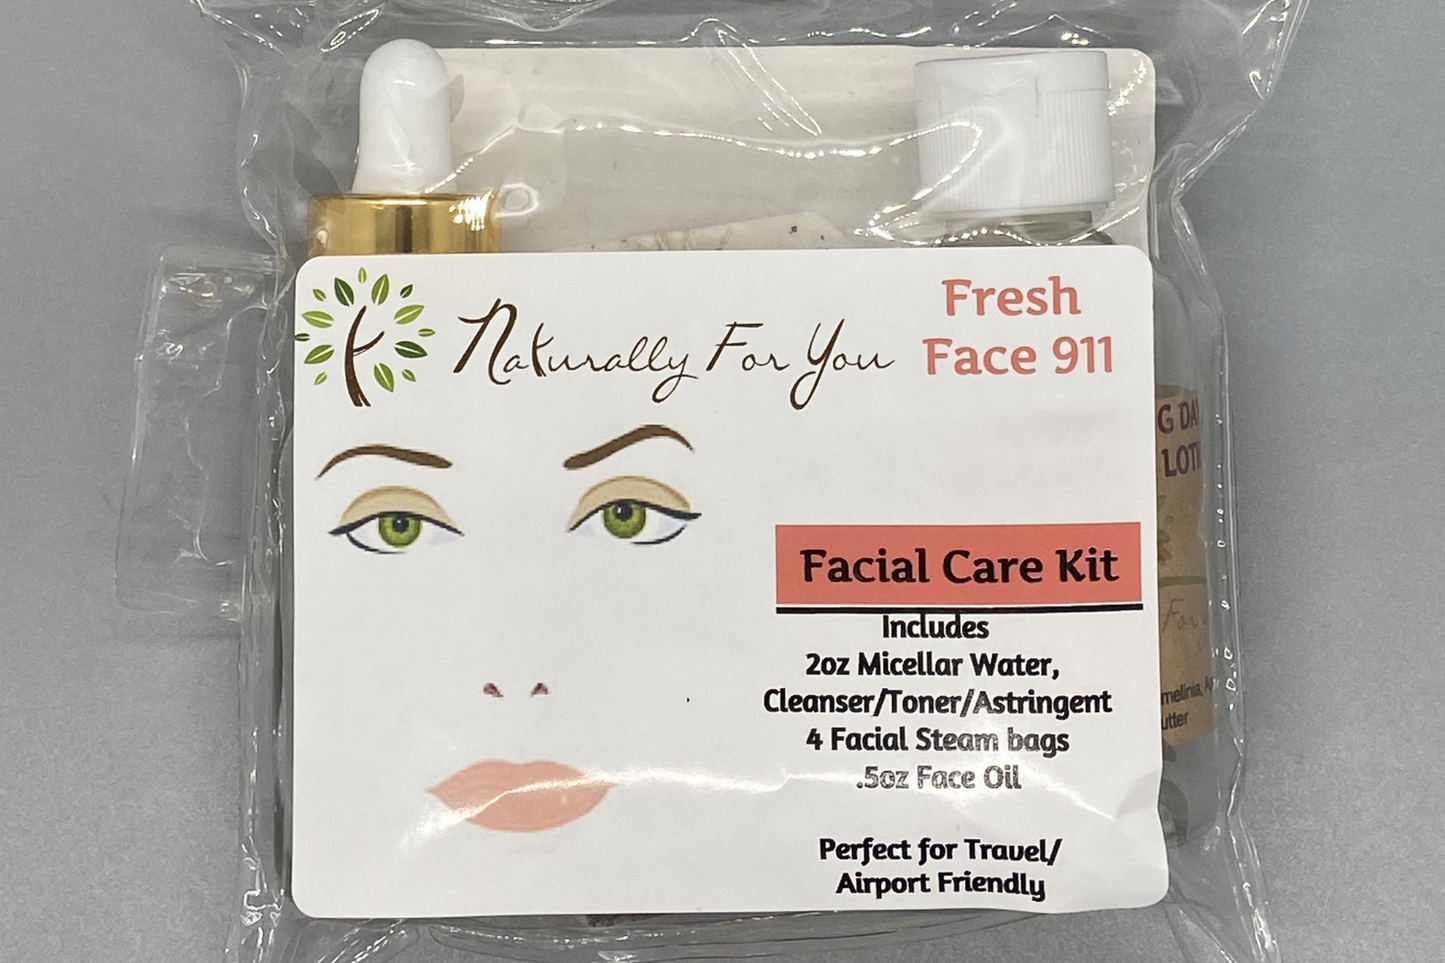 Facial Kit care Kit